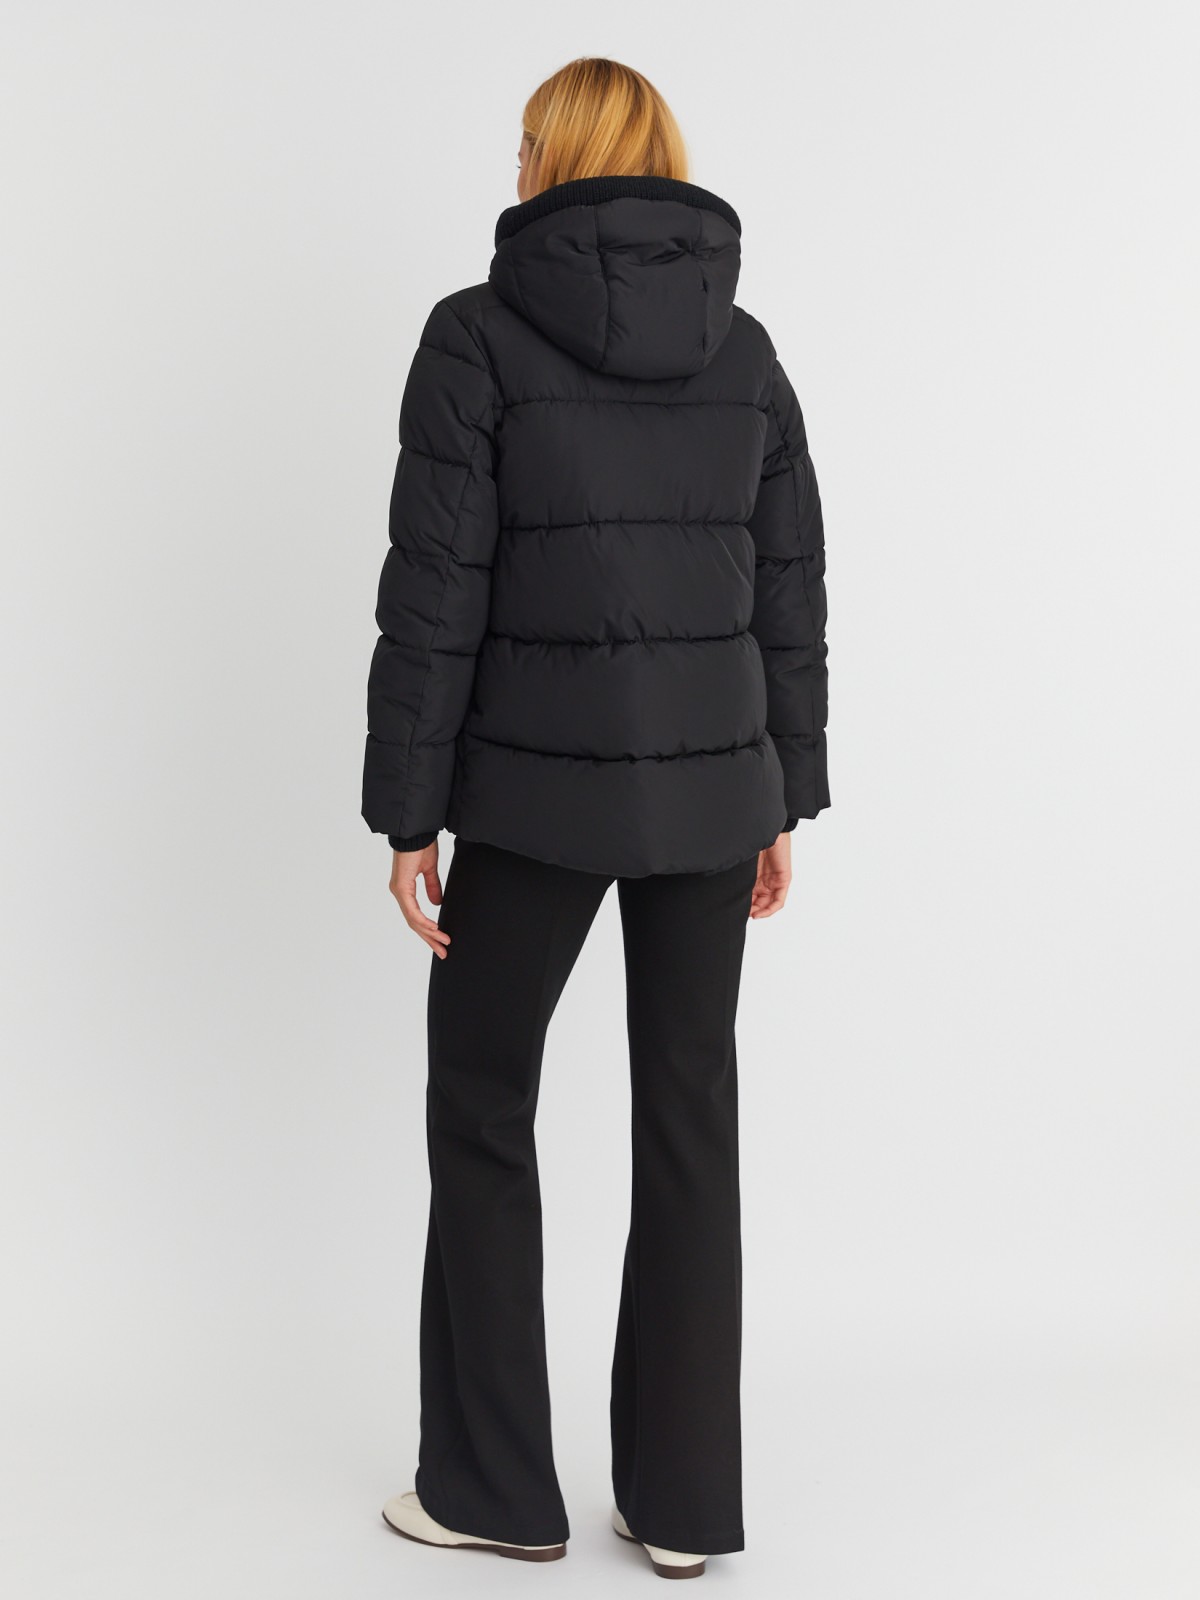 Тёплая стёганая куртка с капюшоном и внутренними манжетами-риб zolla 023345102064, цвет черный, размер S - фото 6